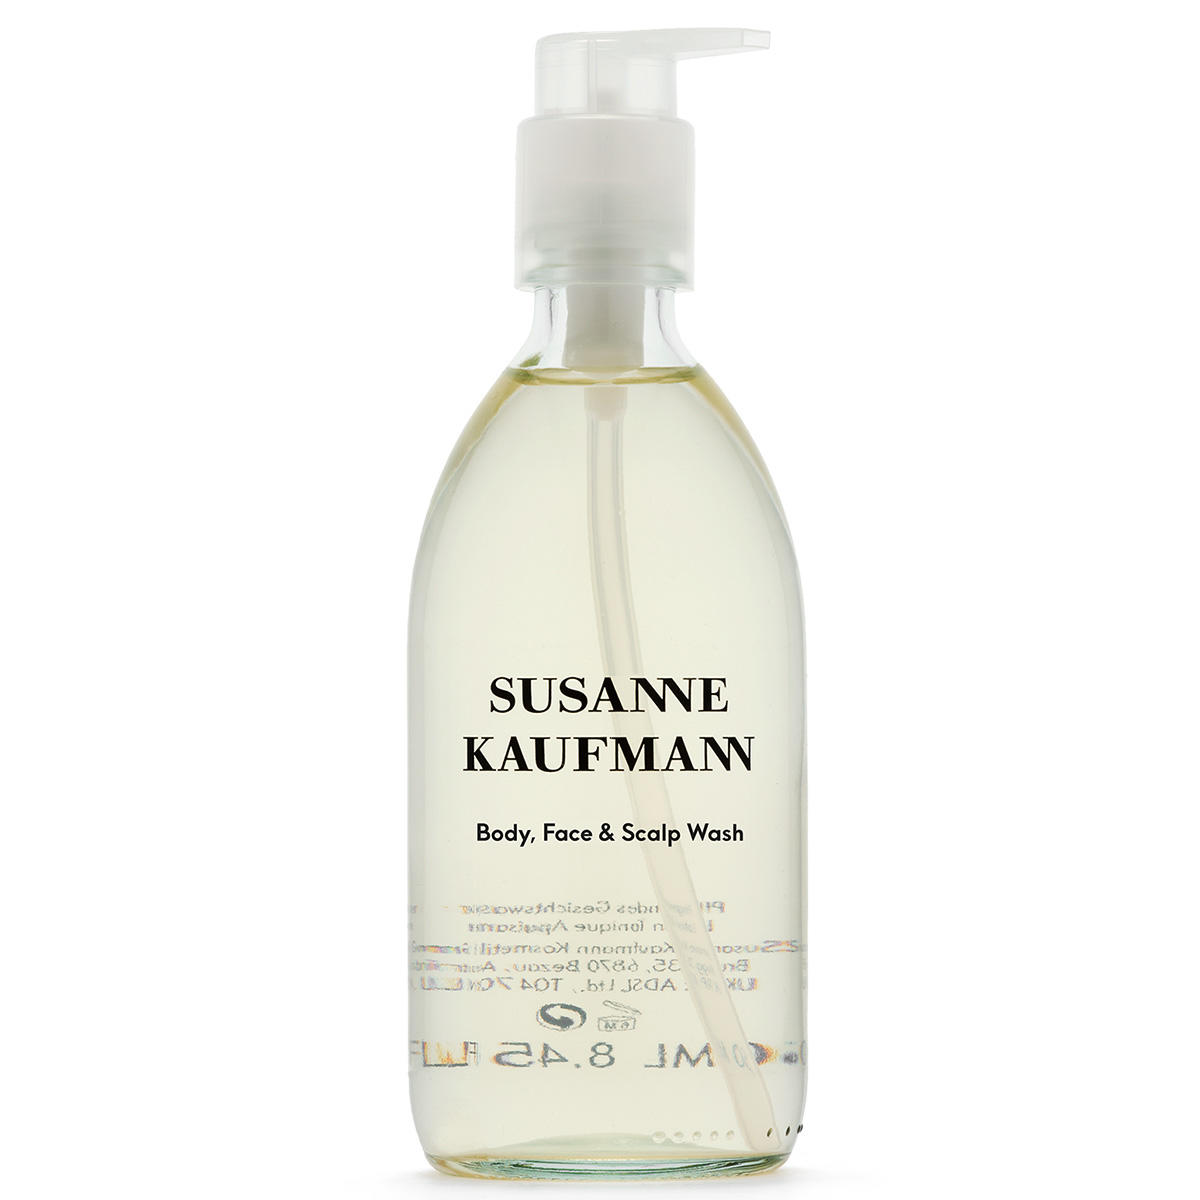 Susanne Kaufmann Body, Face & Scalp Wash 250 ml - 1